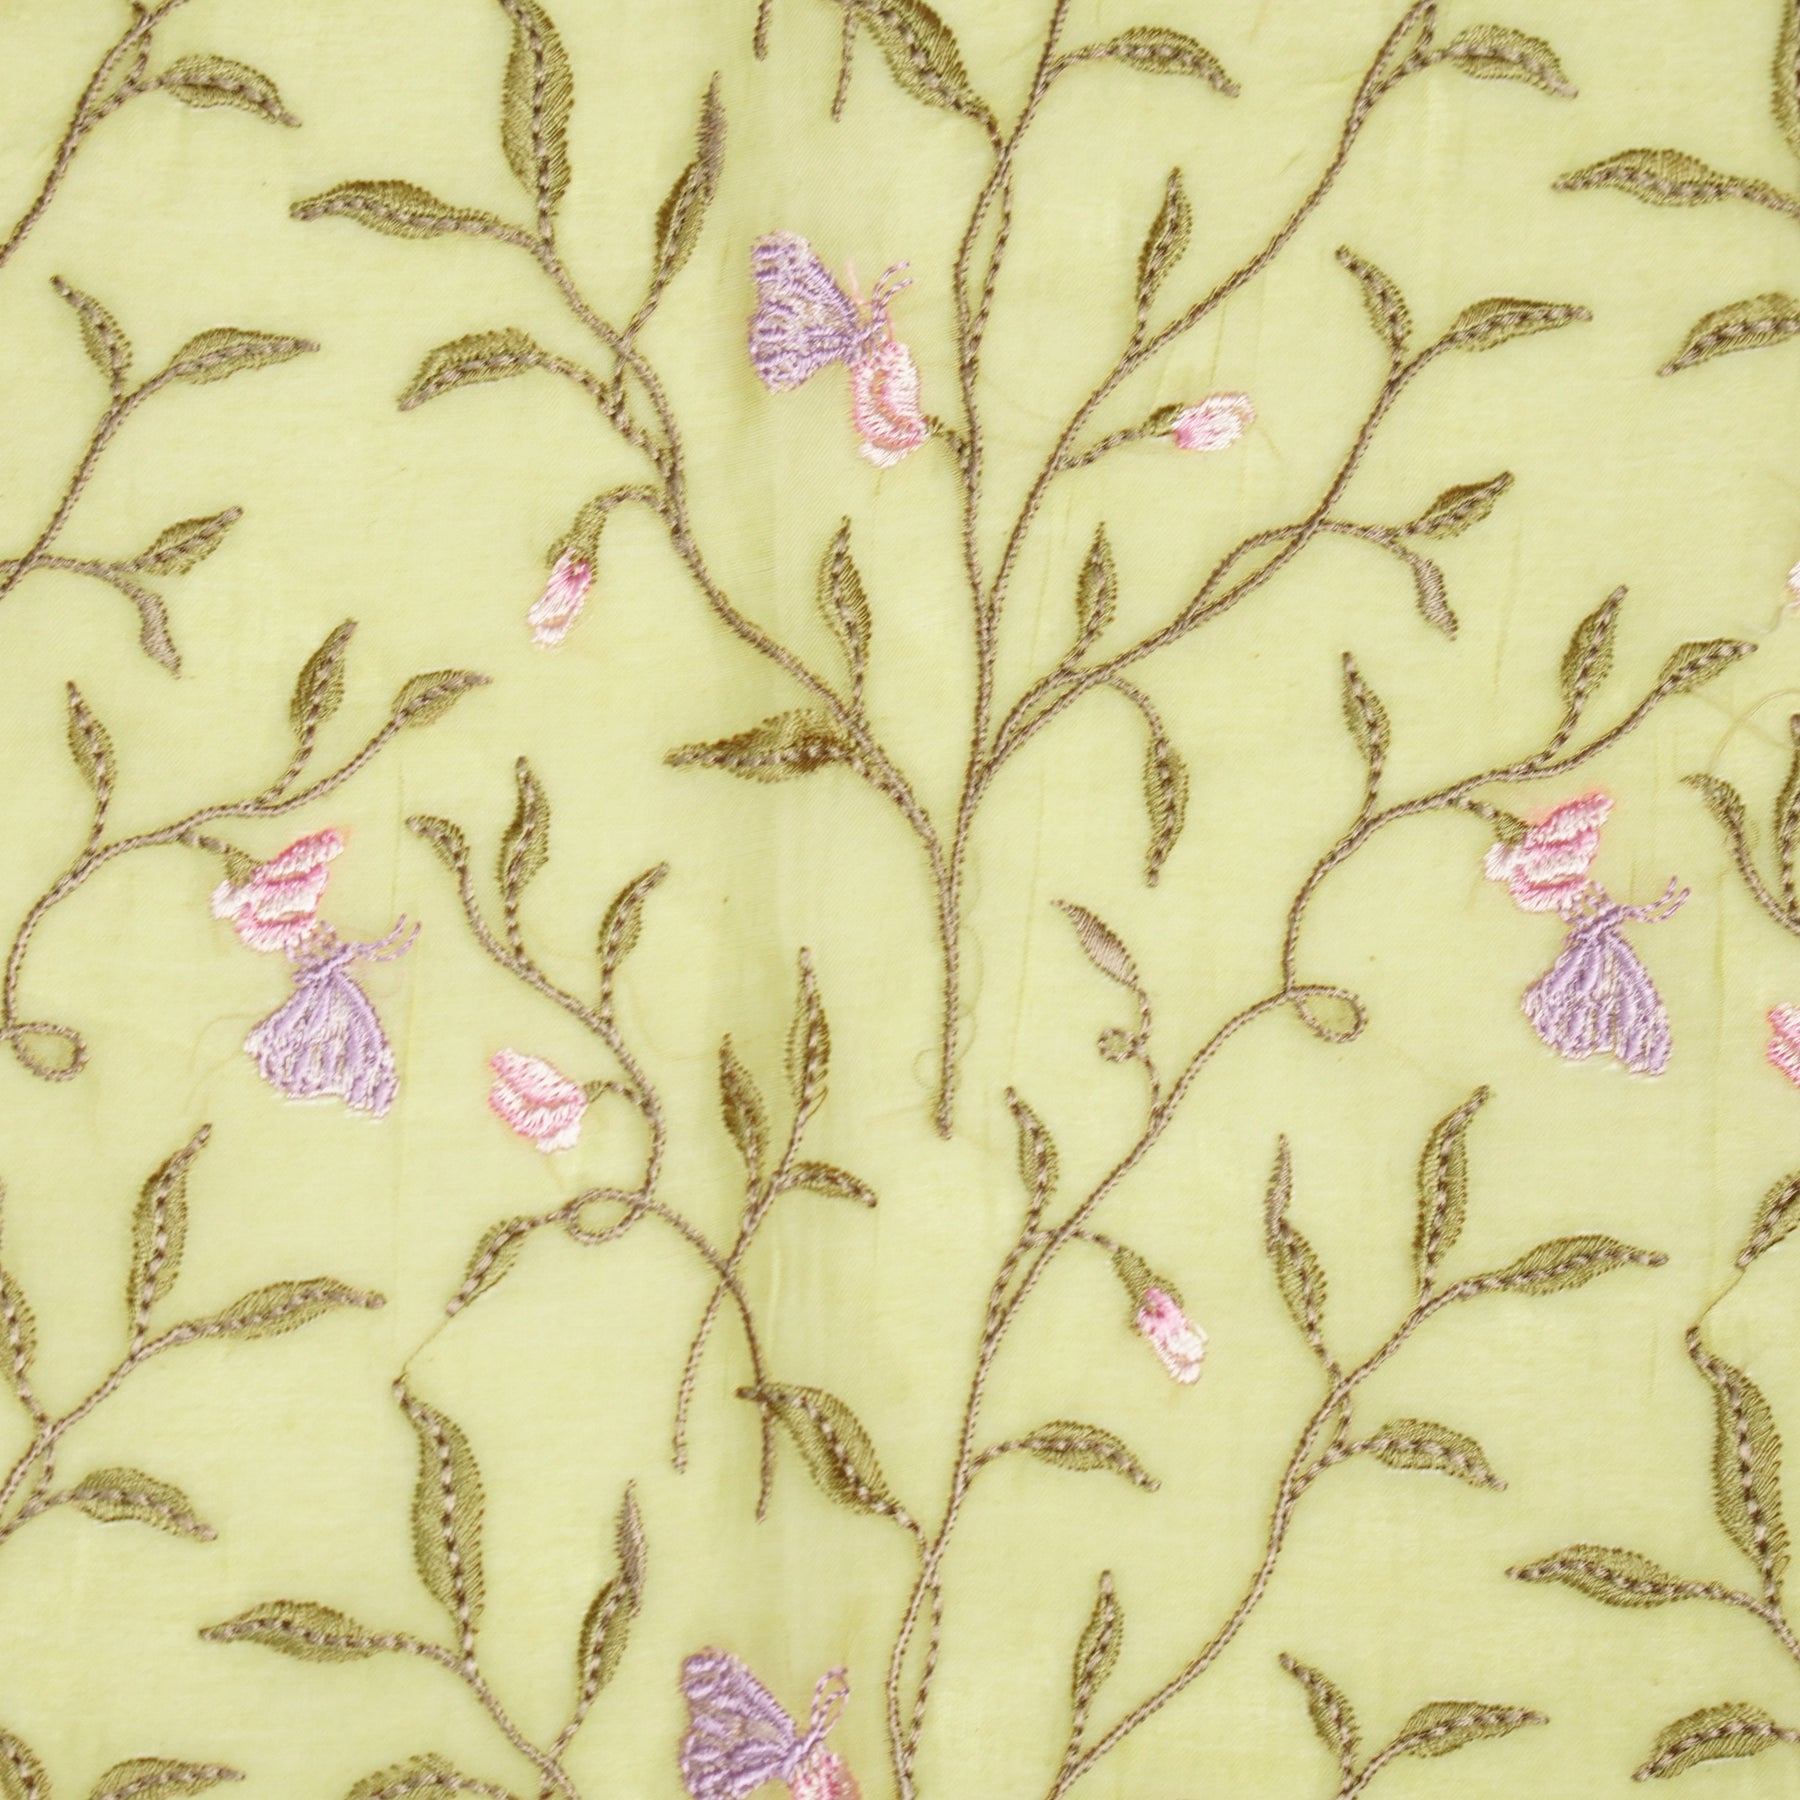 Aaheli Jaal on Dusky Lemon Cotton Silk Embroidered Fabric – Zarinama